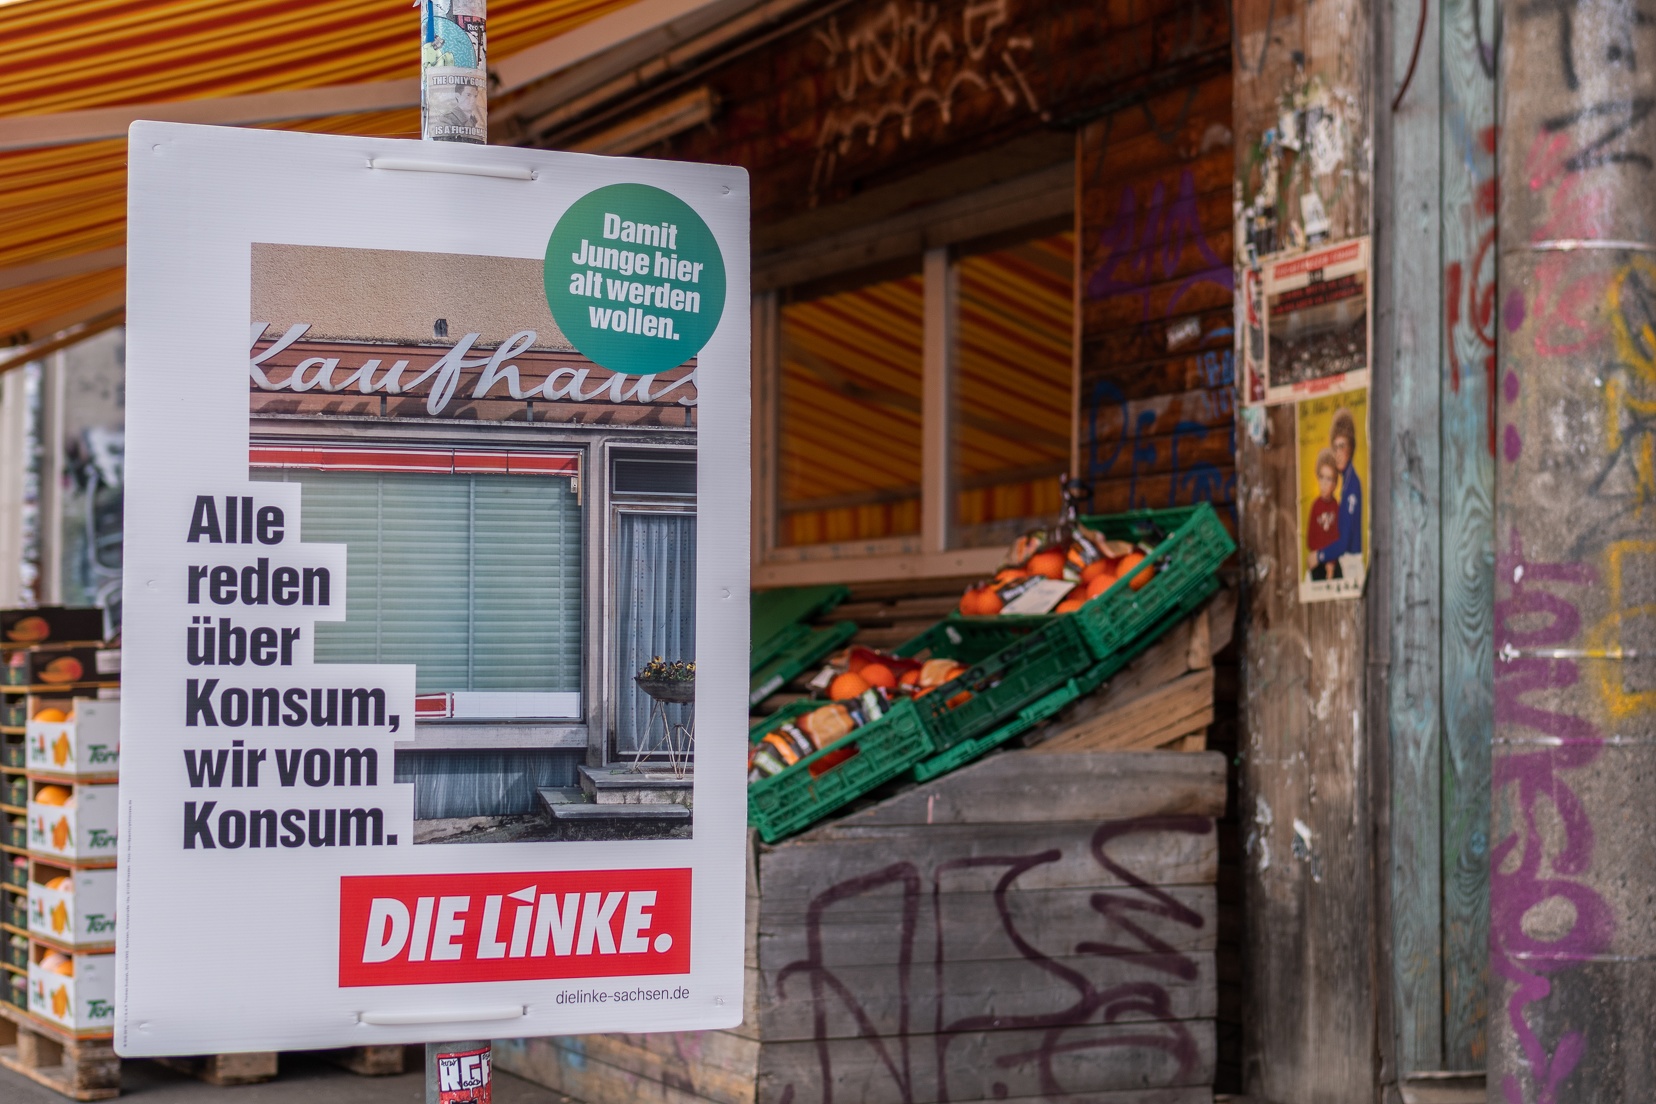 Zu sehen ist ein Wahlplakat mit dem Text: "Alle reden vom Konsum, wir vom Konsum." Zu sehen im Hintergrund ist eine kleine Obstauslage eines Geschäfts.